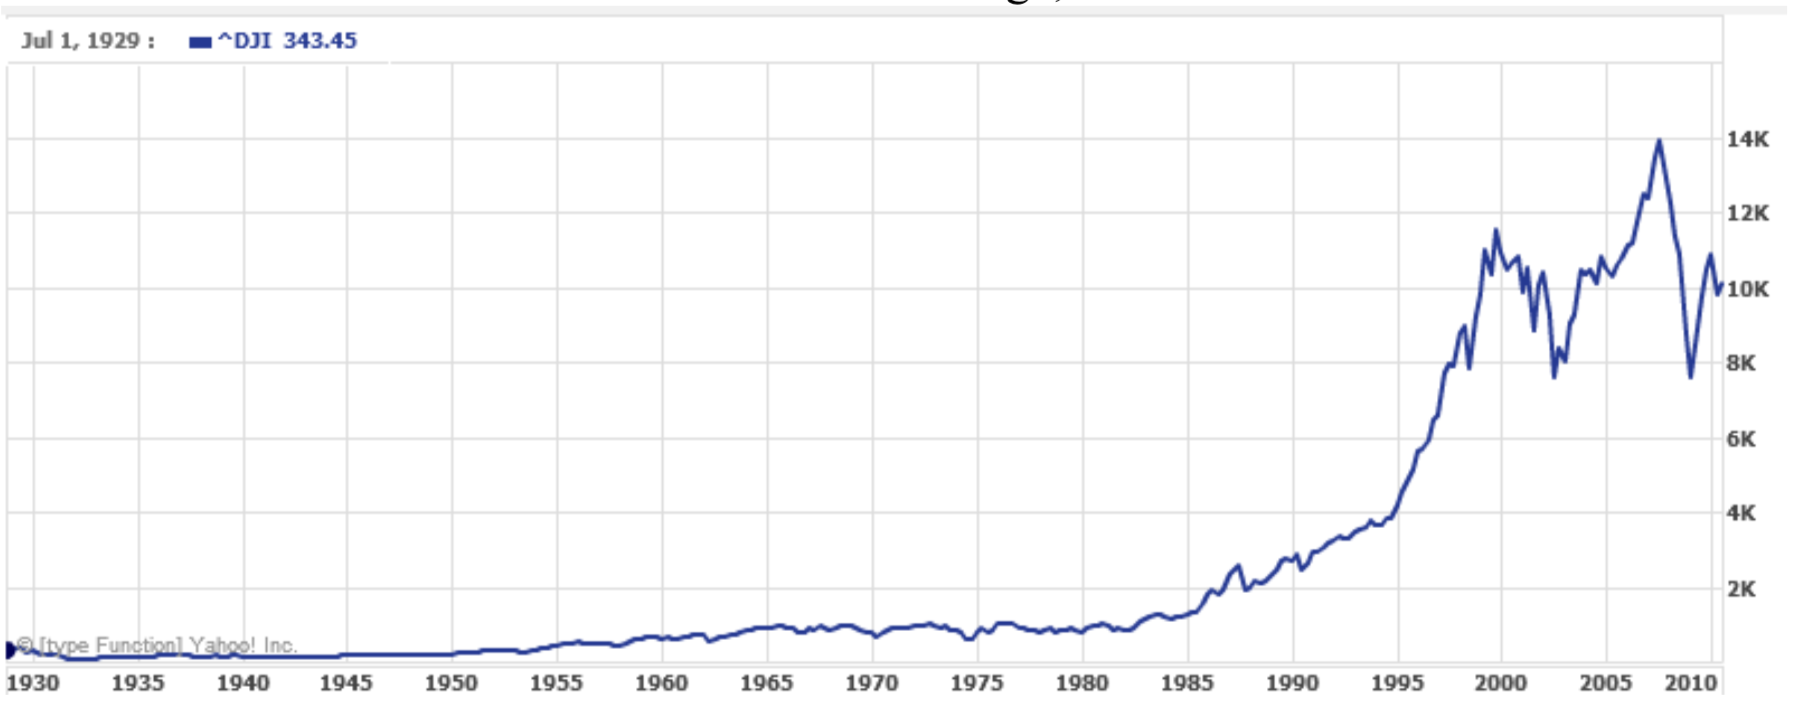 Un gráfico que muestra el Promedio Industrial Dow Jones de 1928 a 2010. El eje vertical va de 0 a 14 mil, igualmente espaciados por 2 mil. El gráfico aparece casi plano de 1928 a 1980, luego parece curvarse hasta el año 2000 donde desciende antes de volver a subir hasta aproximadamente 2008, cuando vuelve a caer.